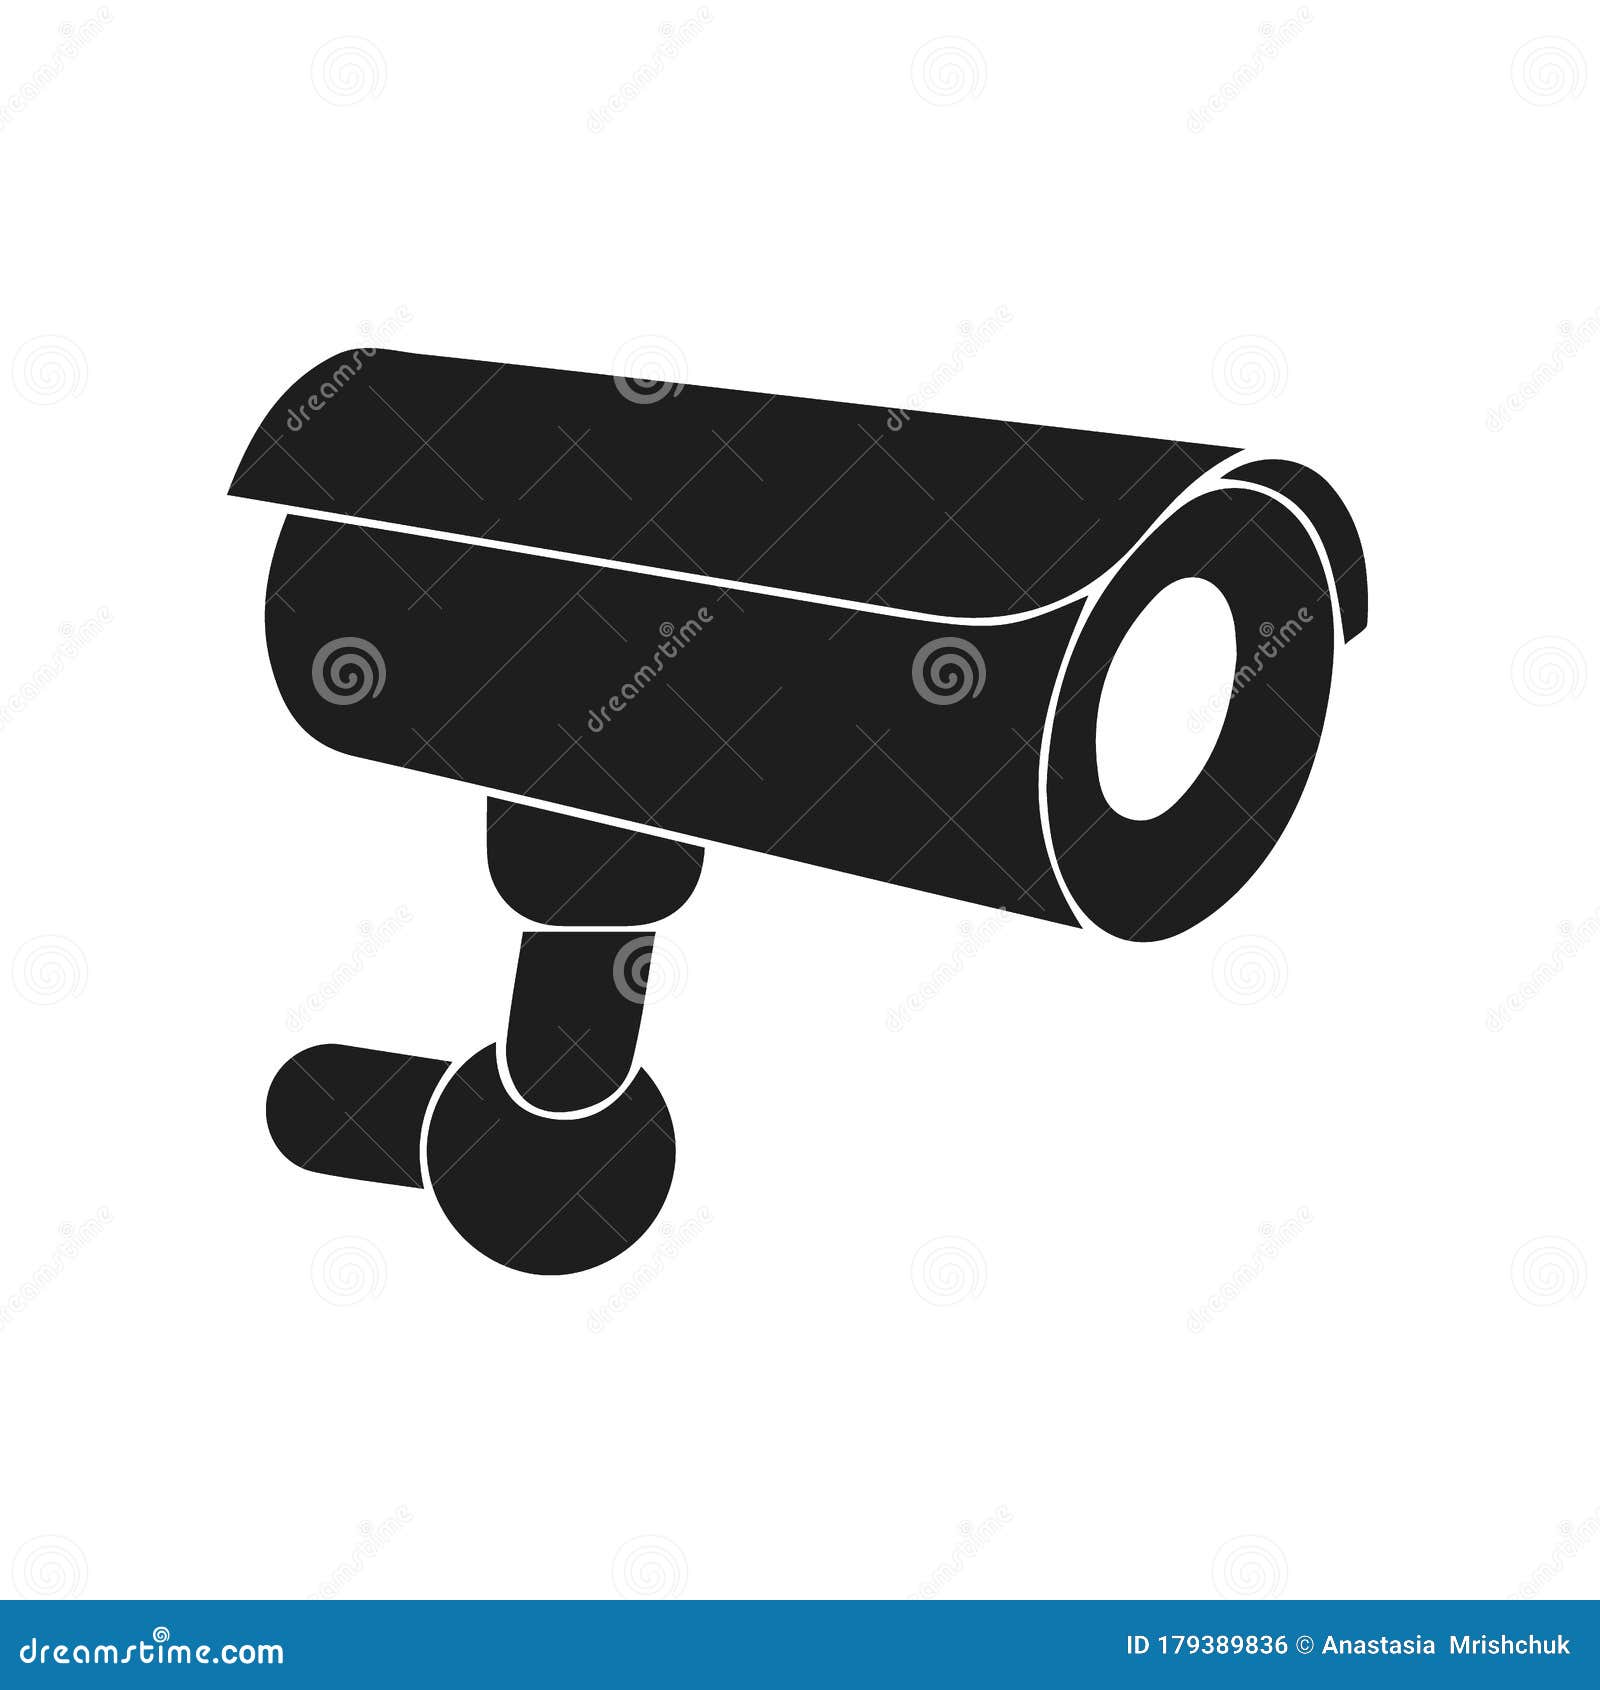 Icono camara de vigilancia Stock Vector